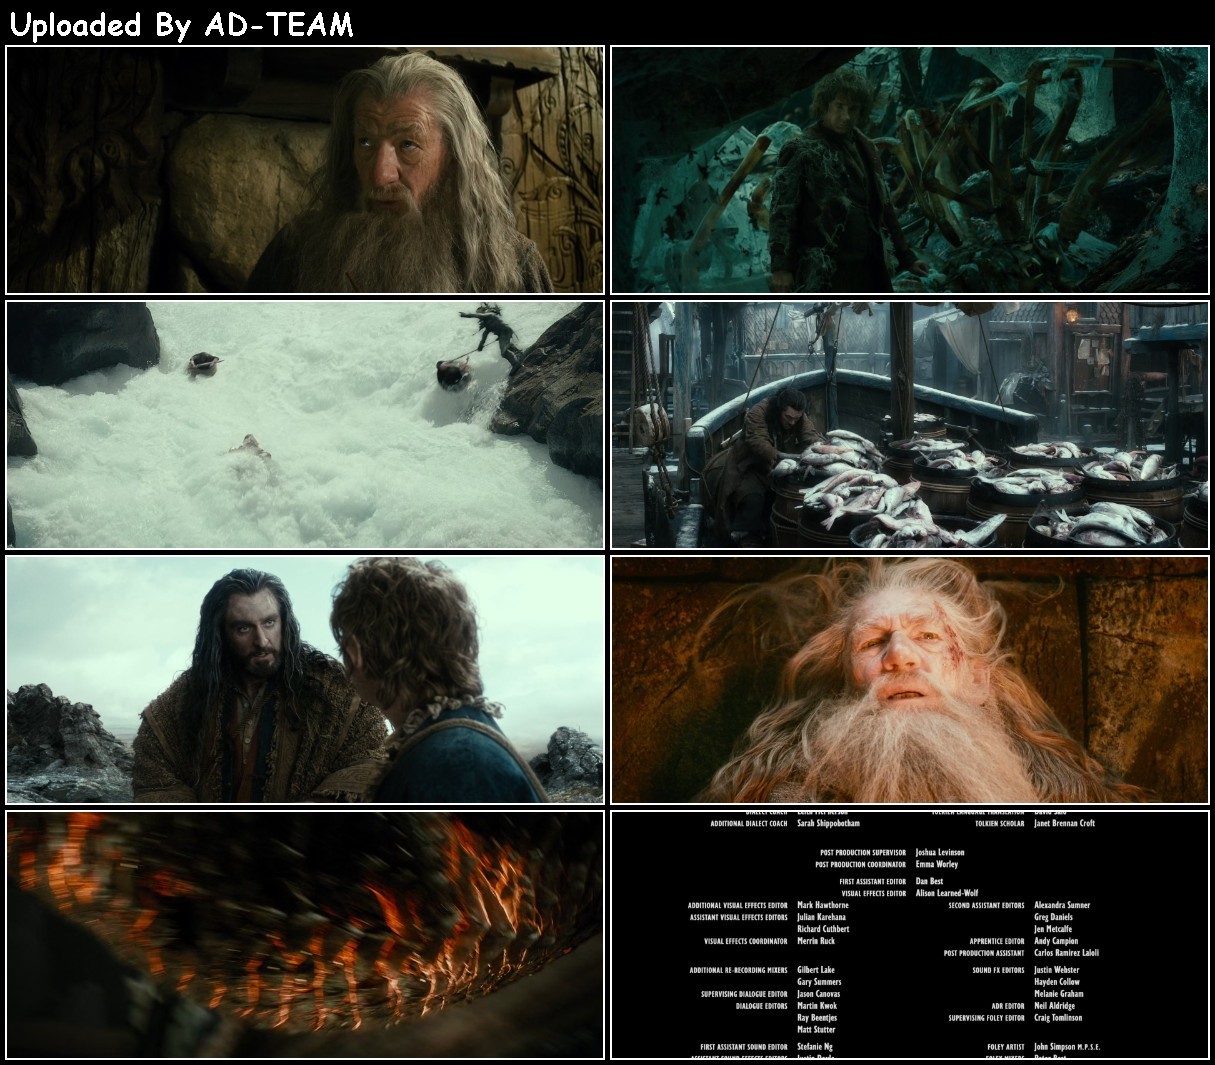 The Hobbit The Desolation of Smaug 2013 EXTENDED 1080p BluRay x265-RARBG WqsR9aNP_o